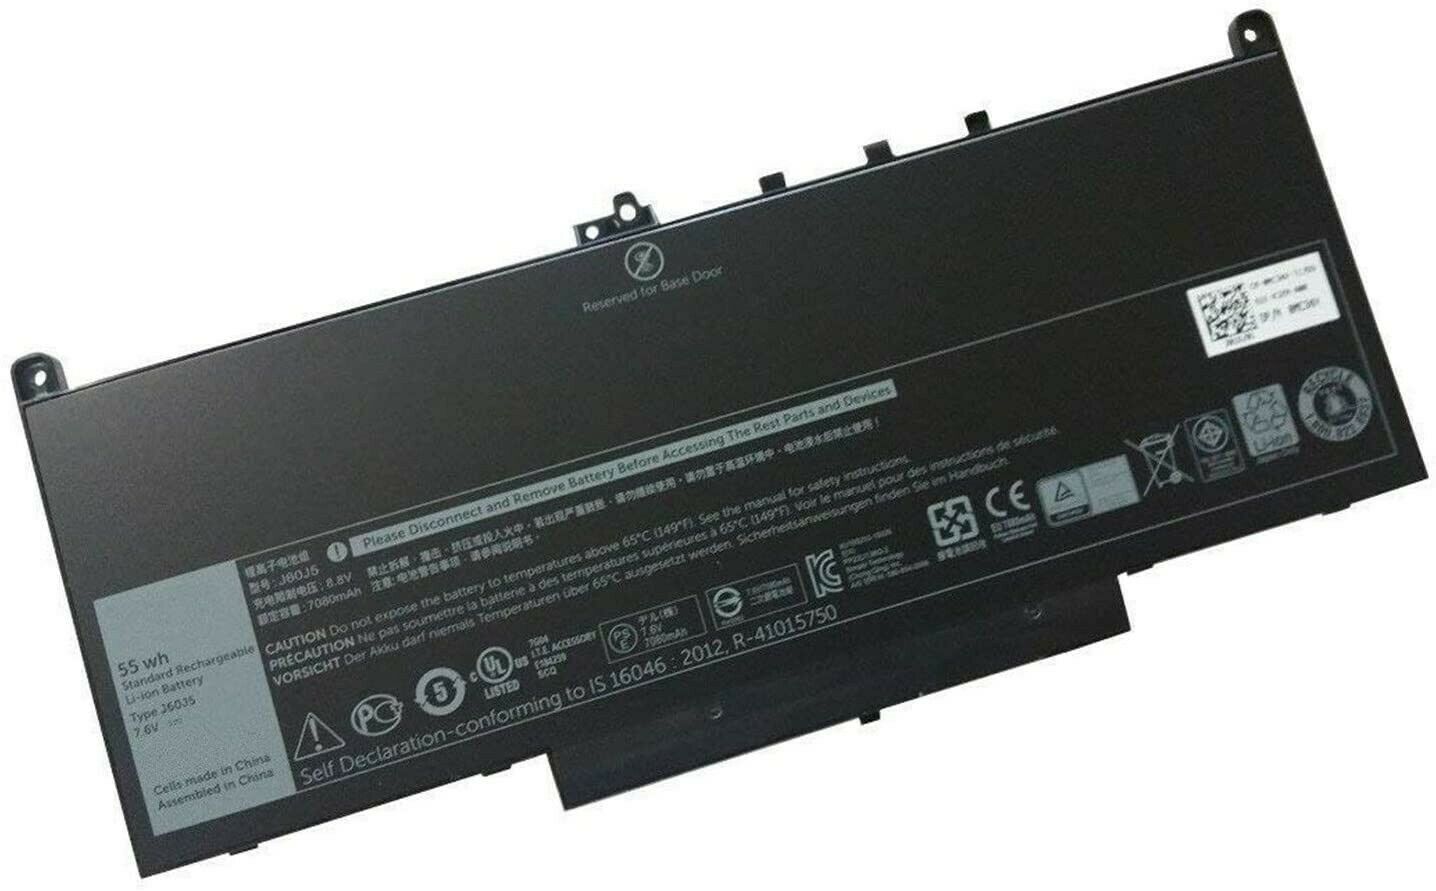 Dell Latitude E7270,E7470 0MC34Y 242WD J60J5 MC34Y kompatibelt batterier - Trykk på bildet for å lukke